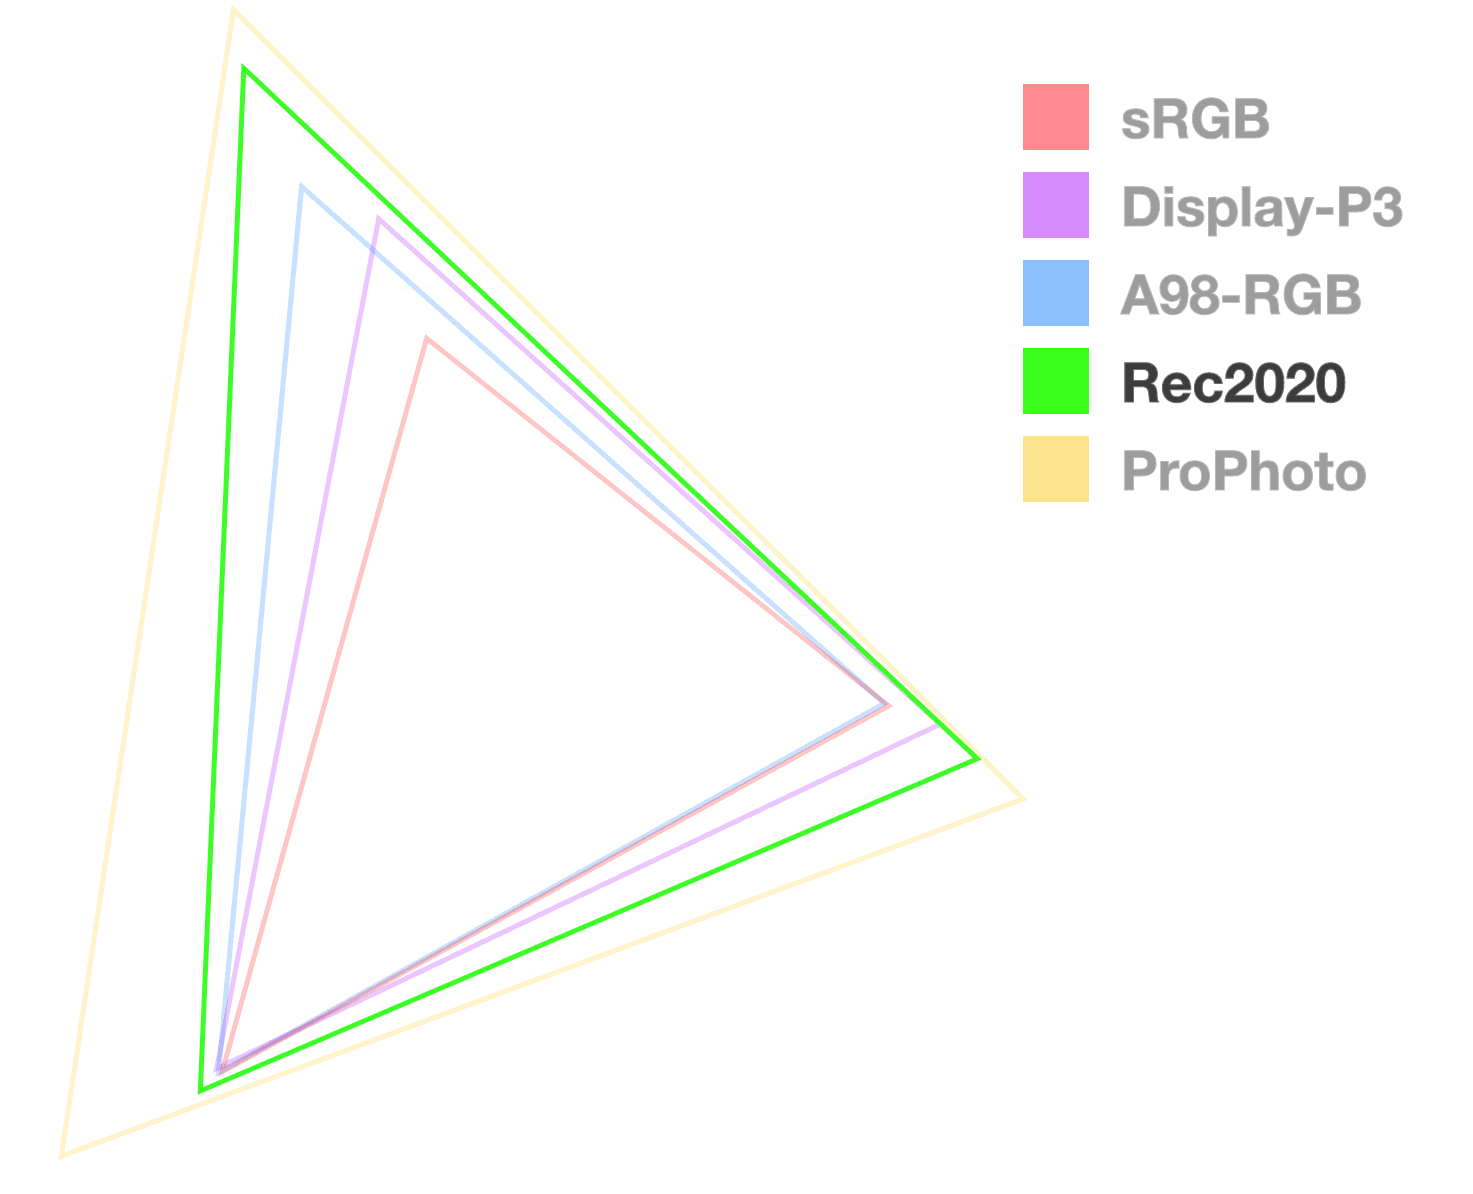 El triángulo Rec2020 es el único completamente opaco, por lo que ayuda a visualizar el tamaño de la gama. Parece el 2o lugar desde el más grande.